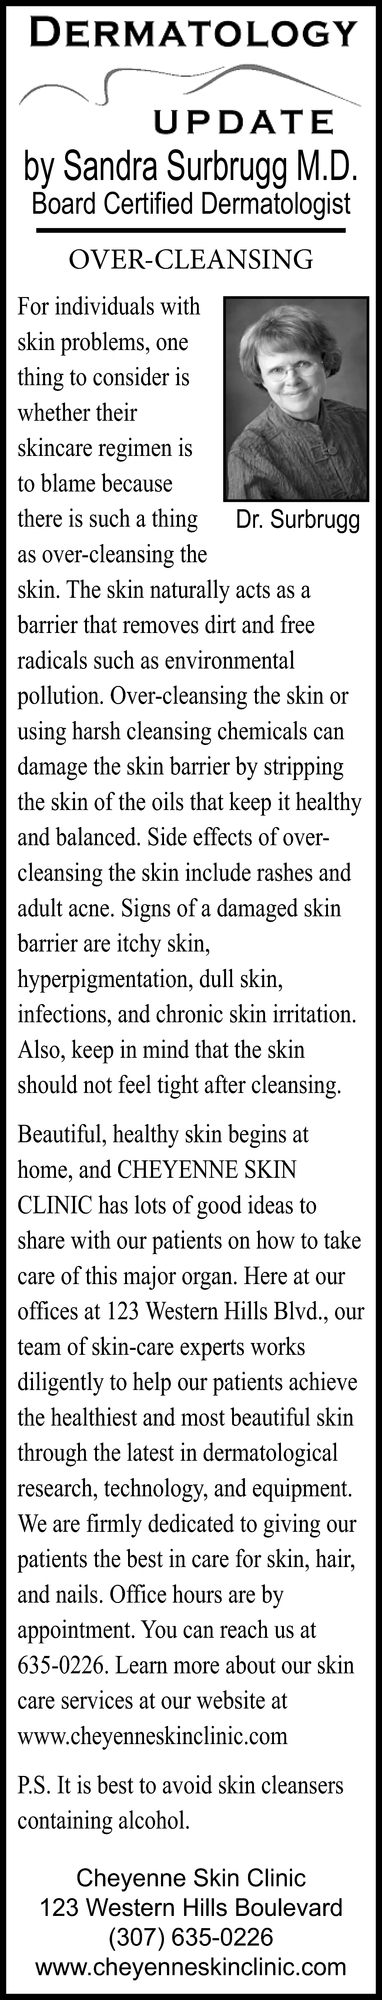 Dermatology Update